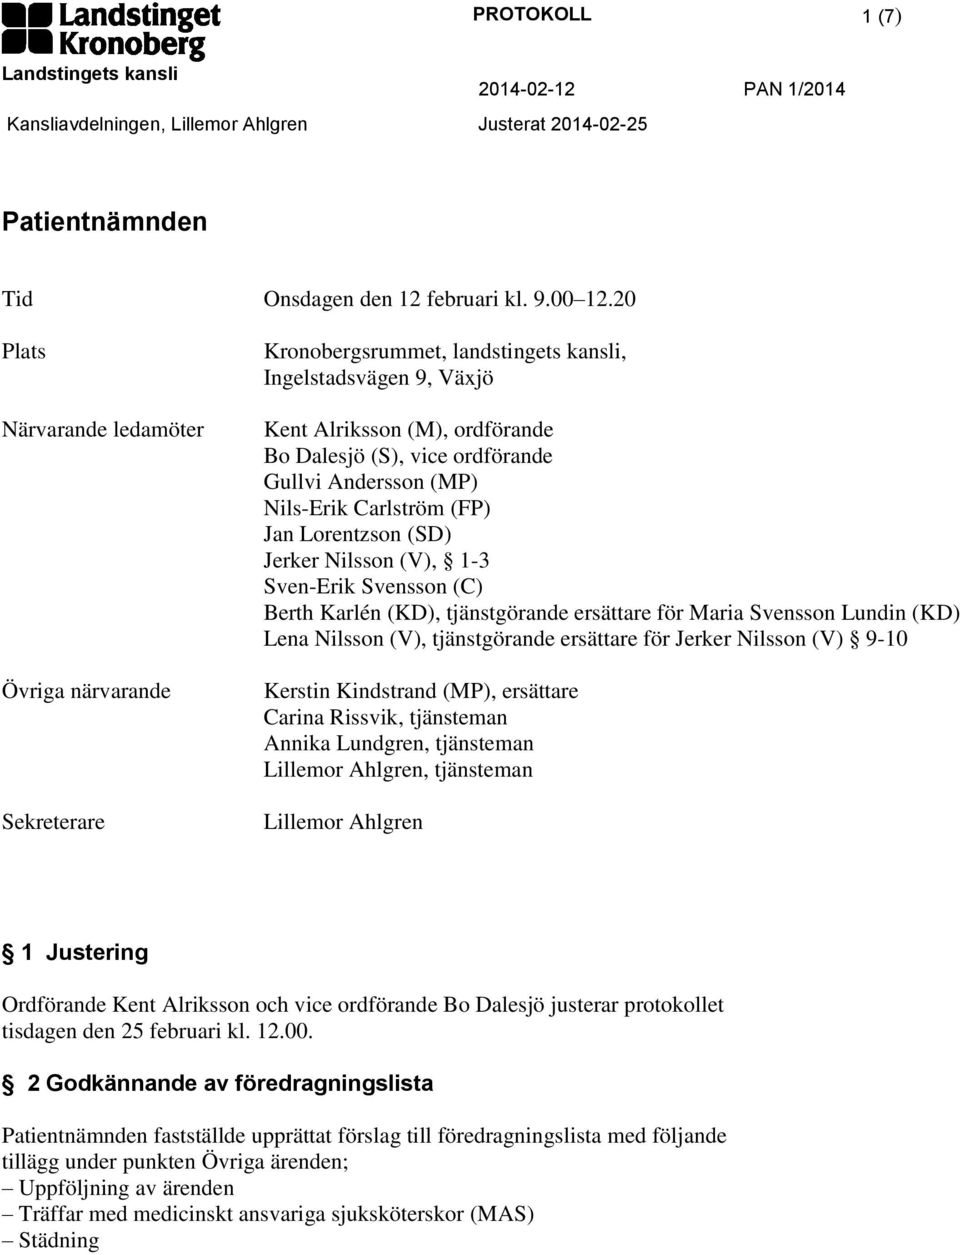 Andersson (MP) Nils-Erik Carlström (FP) Jan Lorentzson (SD) Jerker Nilsson (V), 1-3 Sven-Erik Svensson (C) Berth Karlén (KD), tjänstgörande ersättare för Maria Svensson Lundin (KD) Lena Nilsson (V),